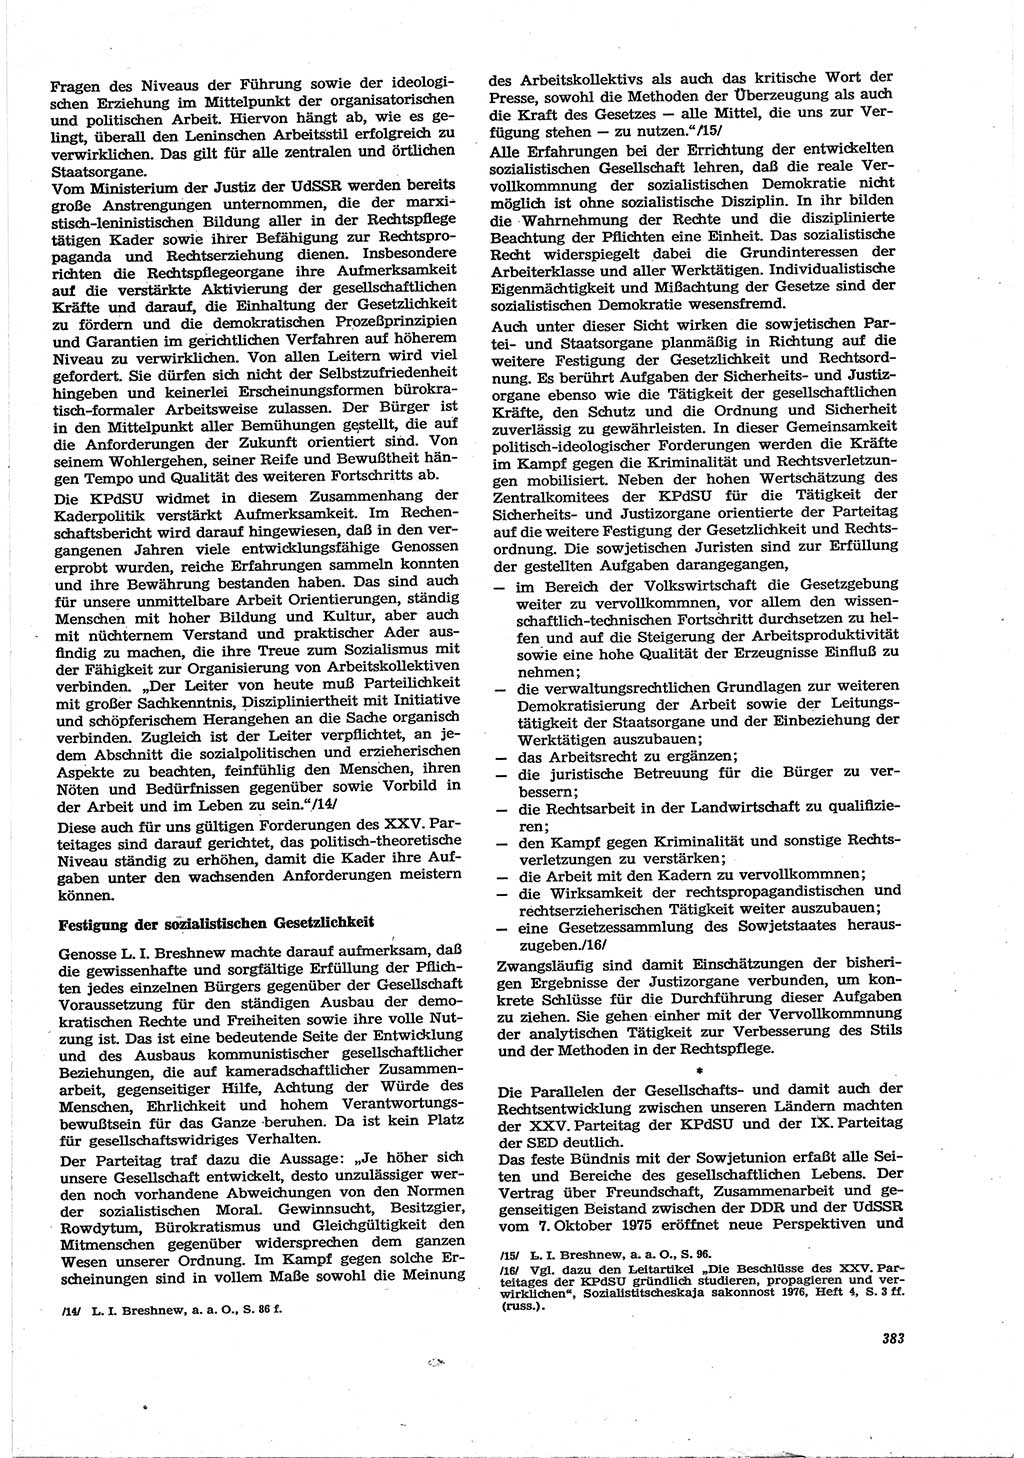 Neue Justiz (NJ), Zeitschrift für Recht und Rechtswissenschaft [Deutsche Demokratische Republik (DDR)], 30. Jahrgang 1976, Seite 383 (NJ DDR 1976, S. 383)